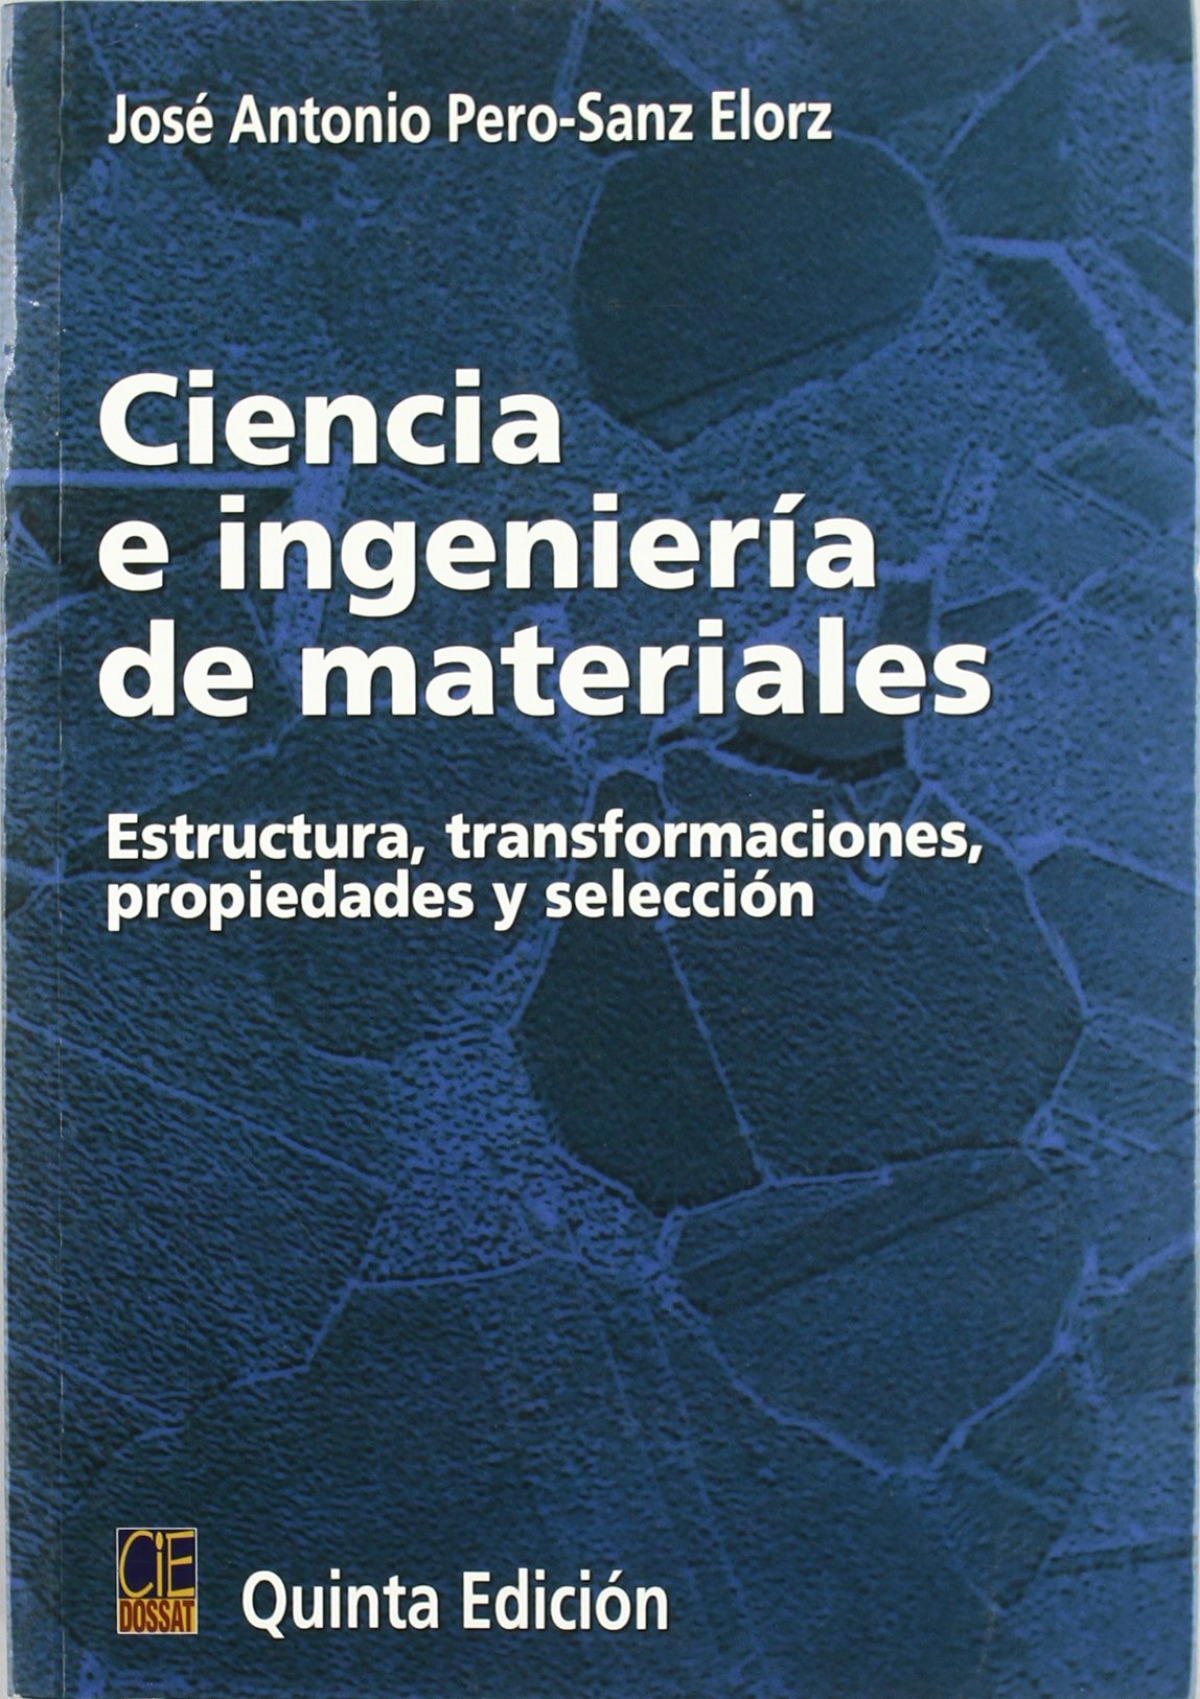 Ciencia e Ingeniería de Materiales - Jose Antonio Pero-Sanz Elorz